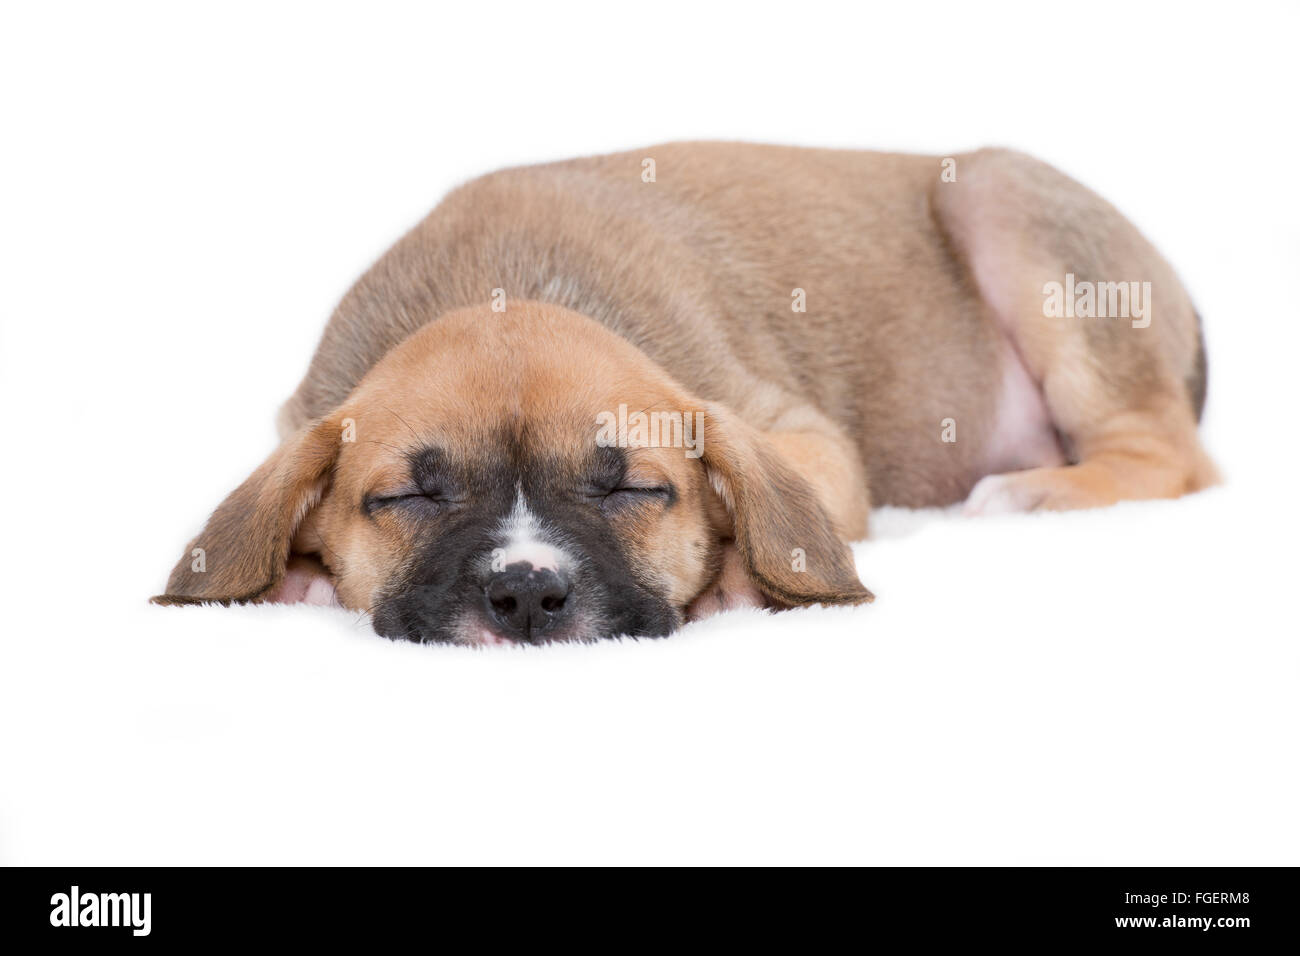 Sleepy Puppy Dog on White Background Stock Photo